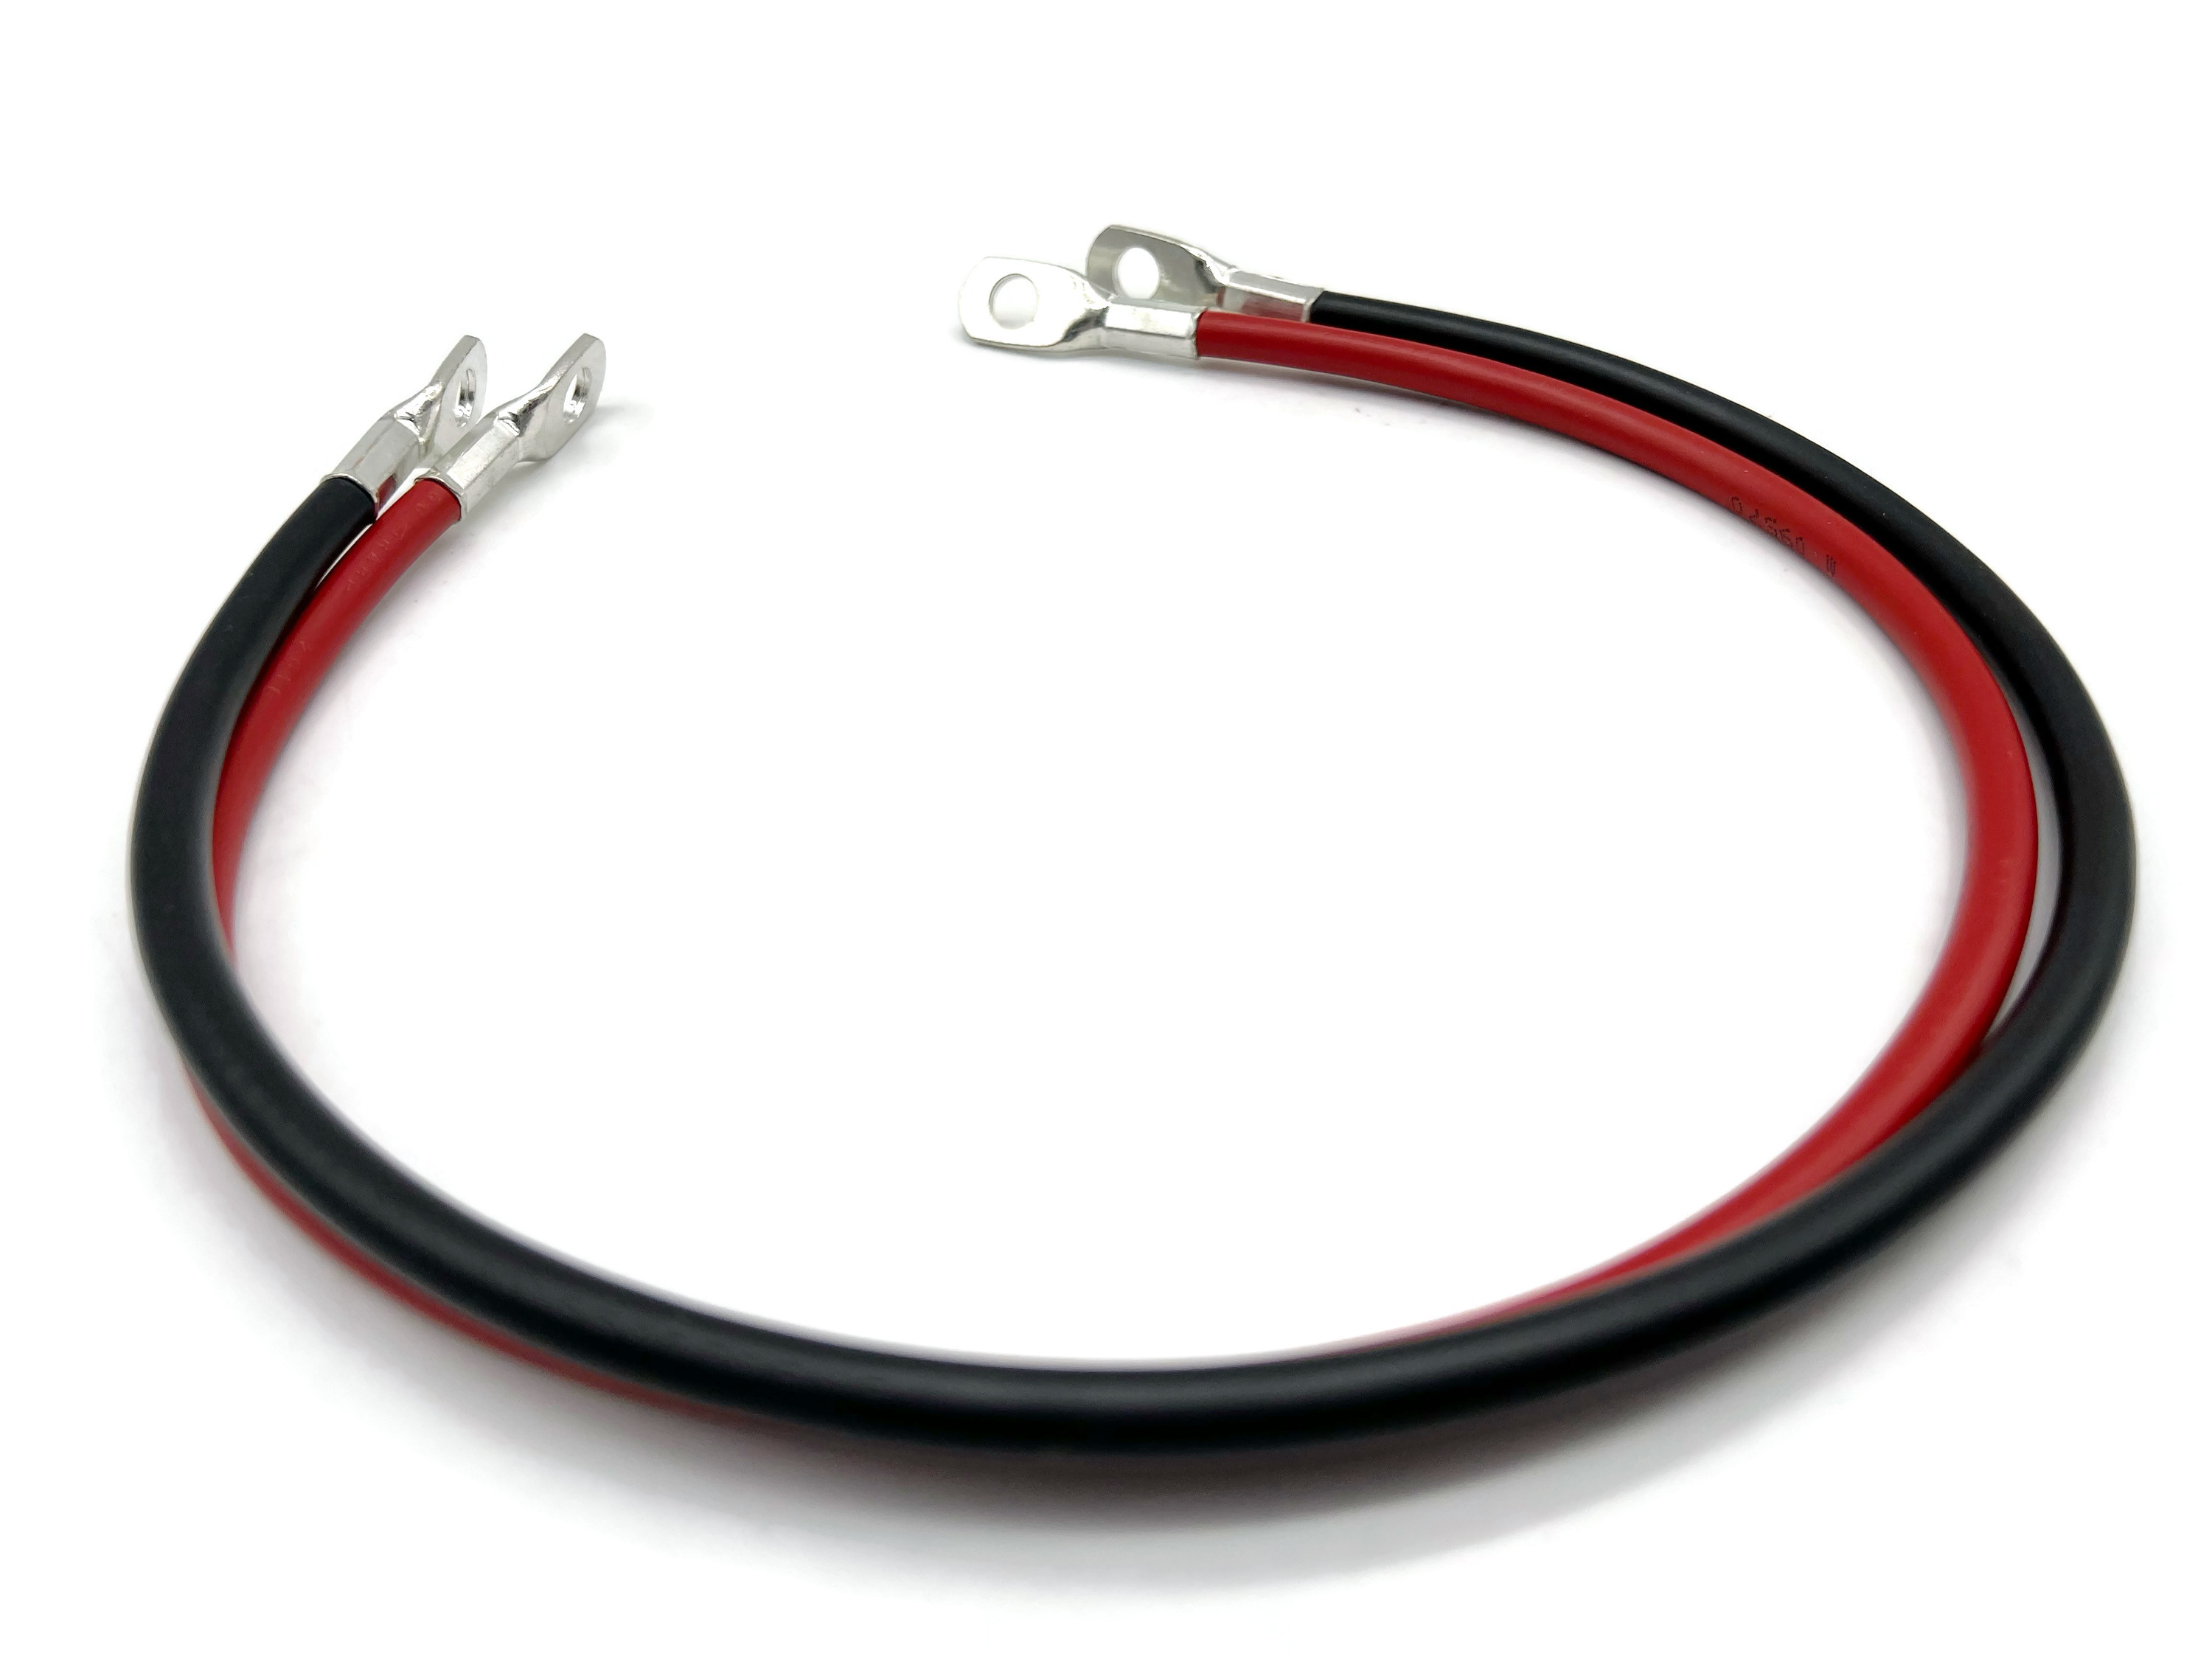 Batteriekabel Set Kabel 16 mm2 mit M8 Rot und Scharz